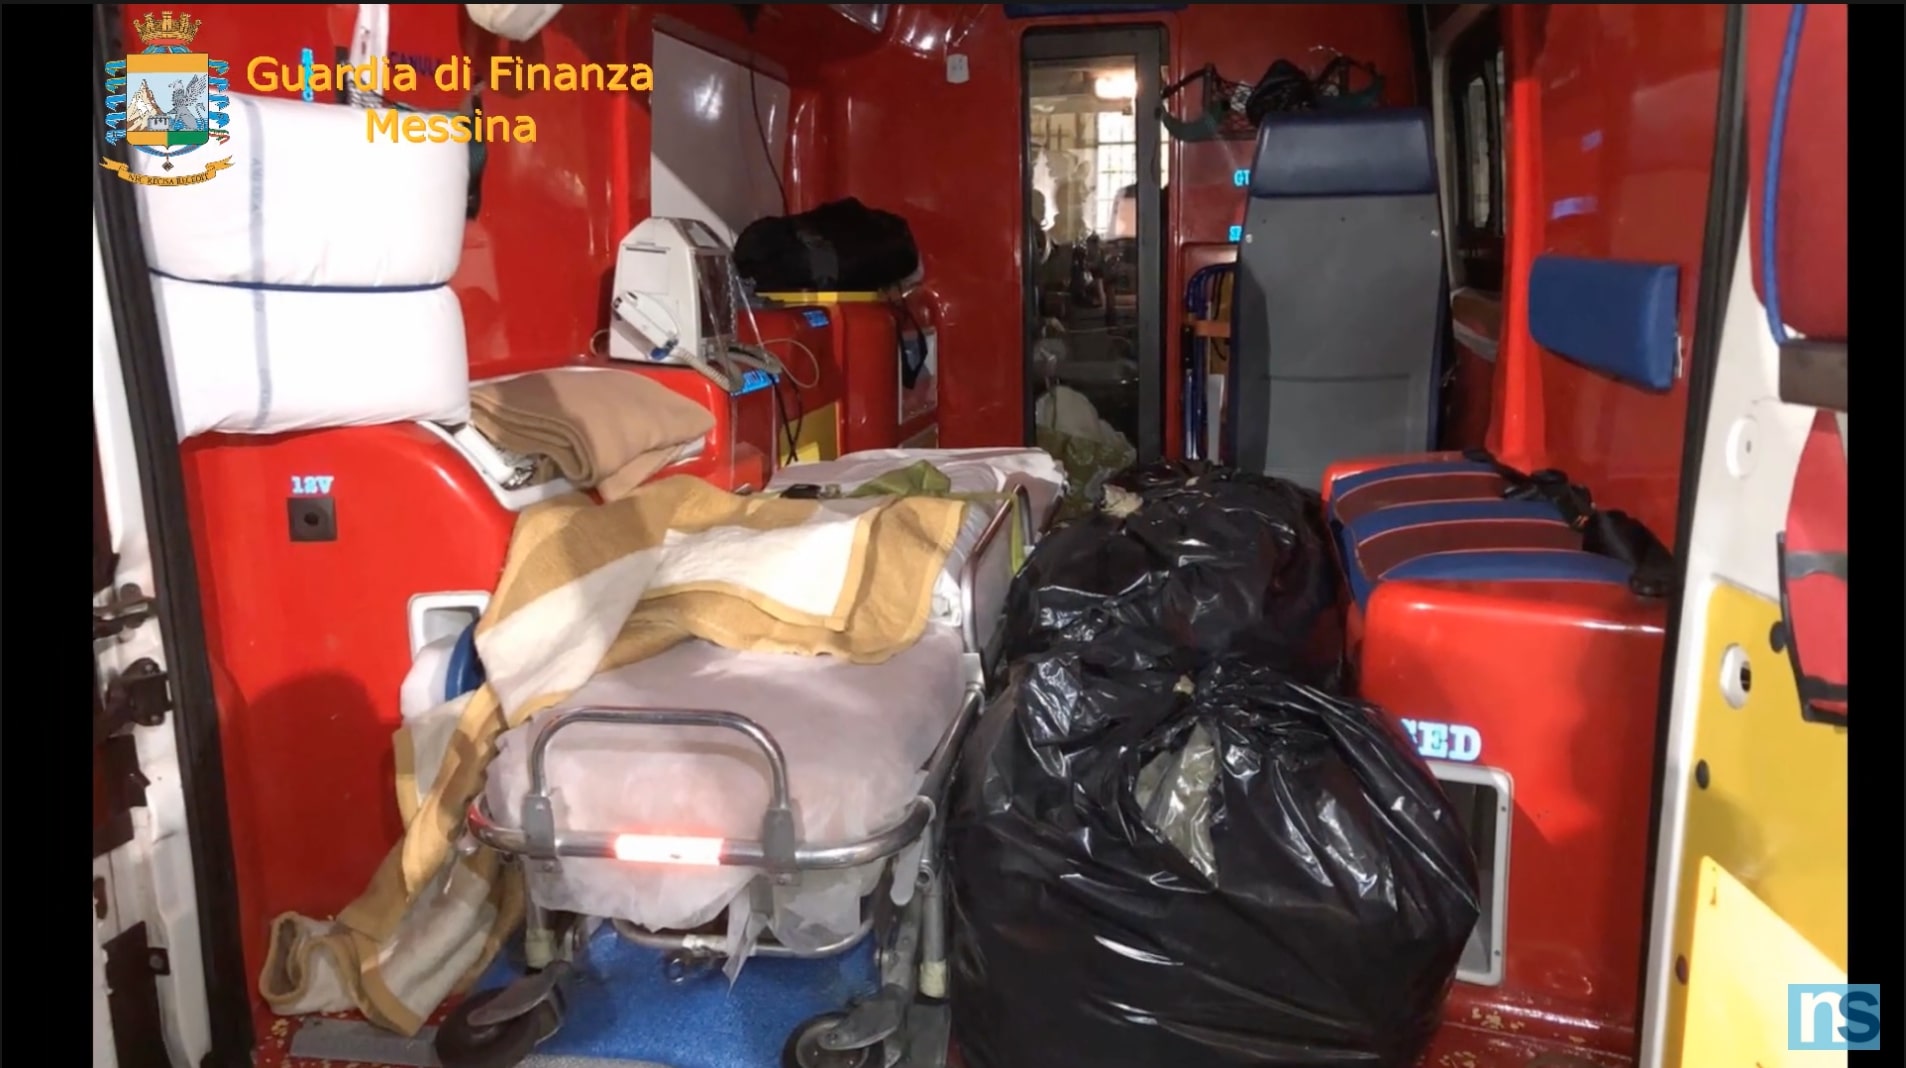 Ambulanza carica di droga fermata all’imbarco dei traghetti: arrestati due percettori di Reddito di Cittadinanza – VIDEO e FOTO